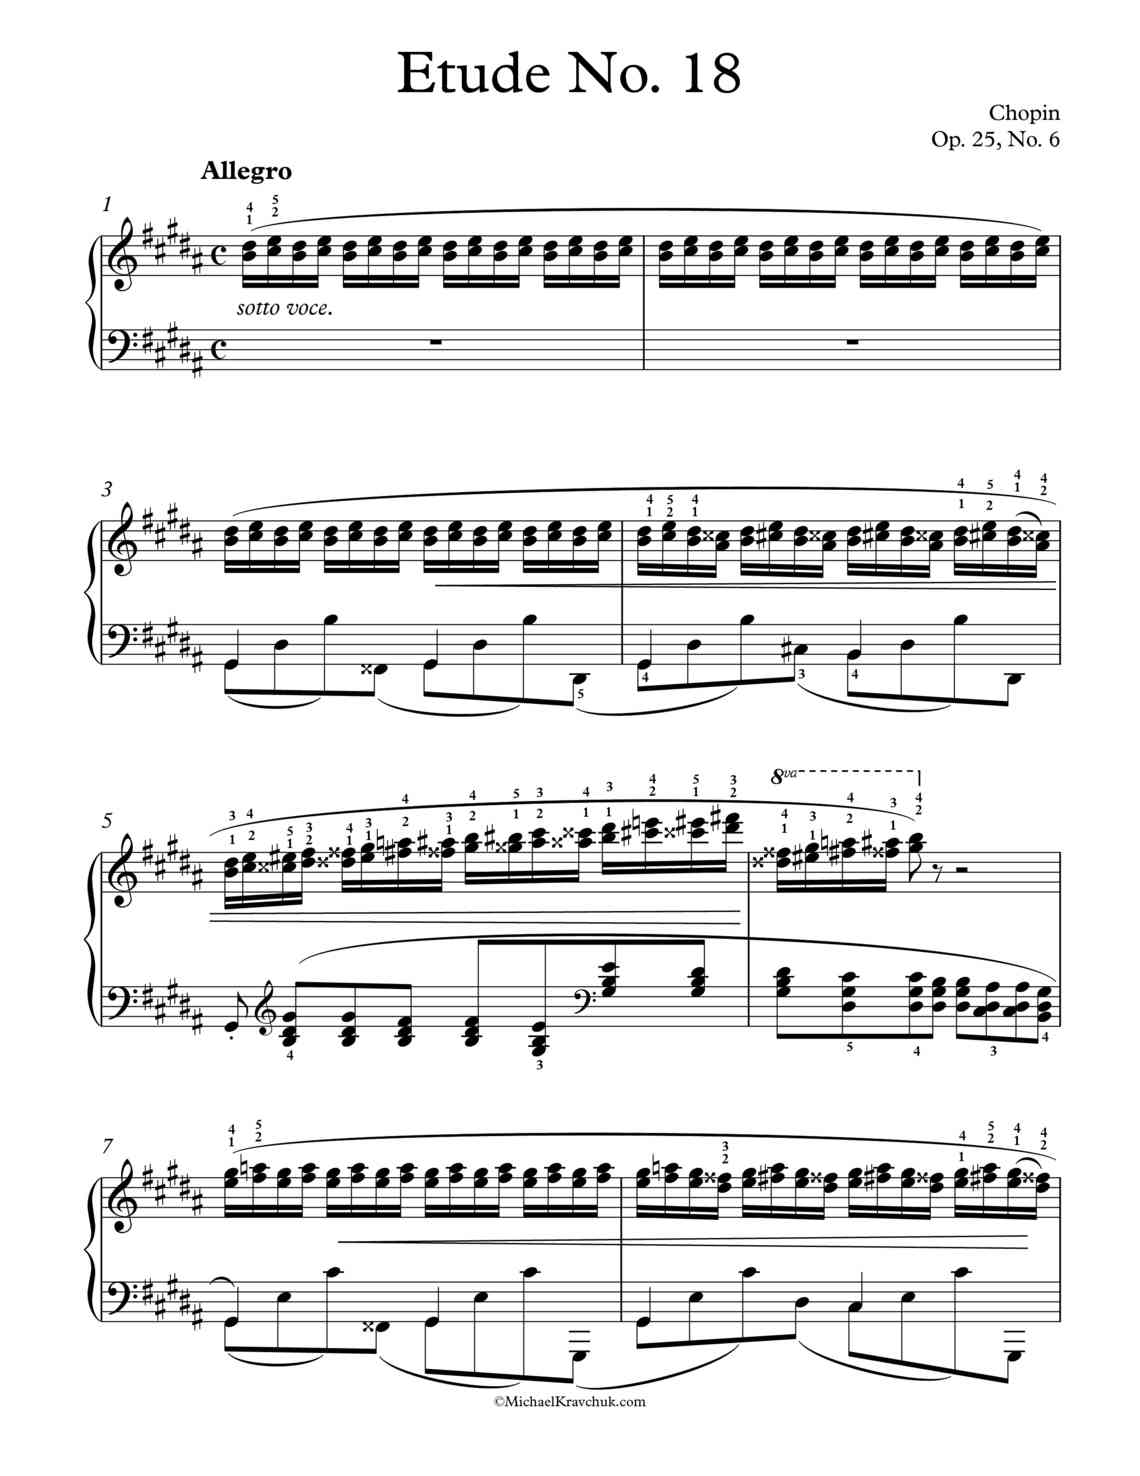 Free Piano Sheet Music - Etude No. 18, Op. 25, No.6 - Thirds - Chopin